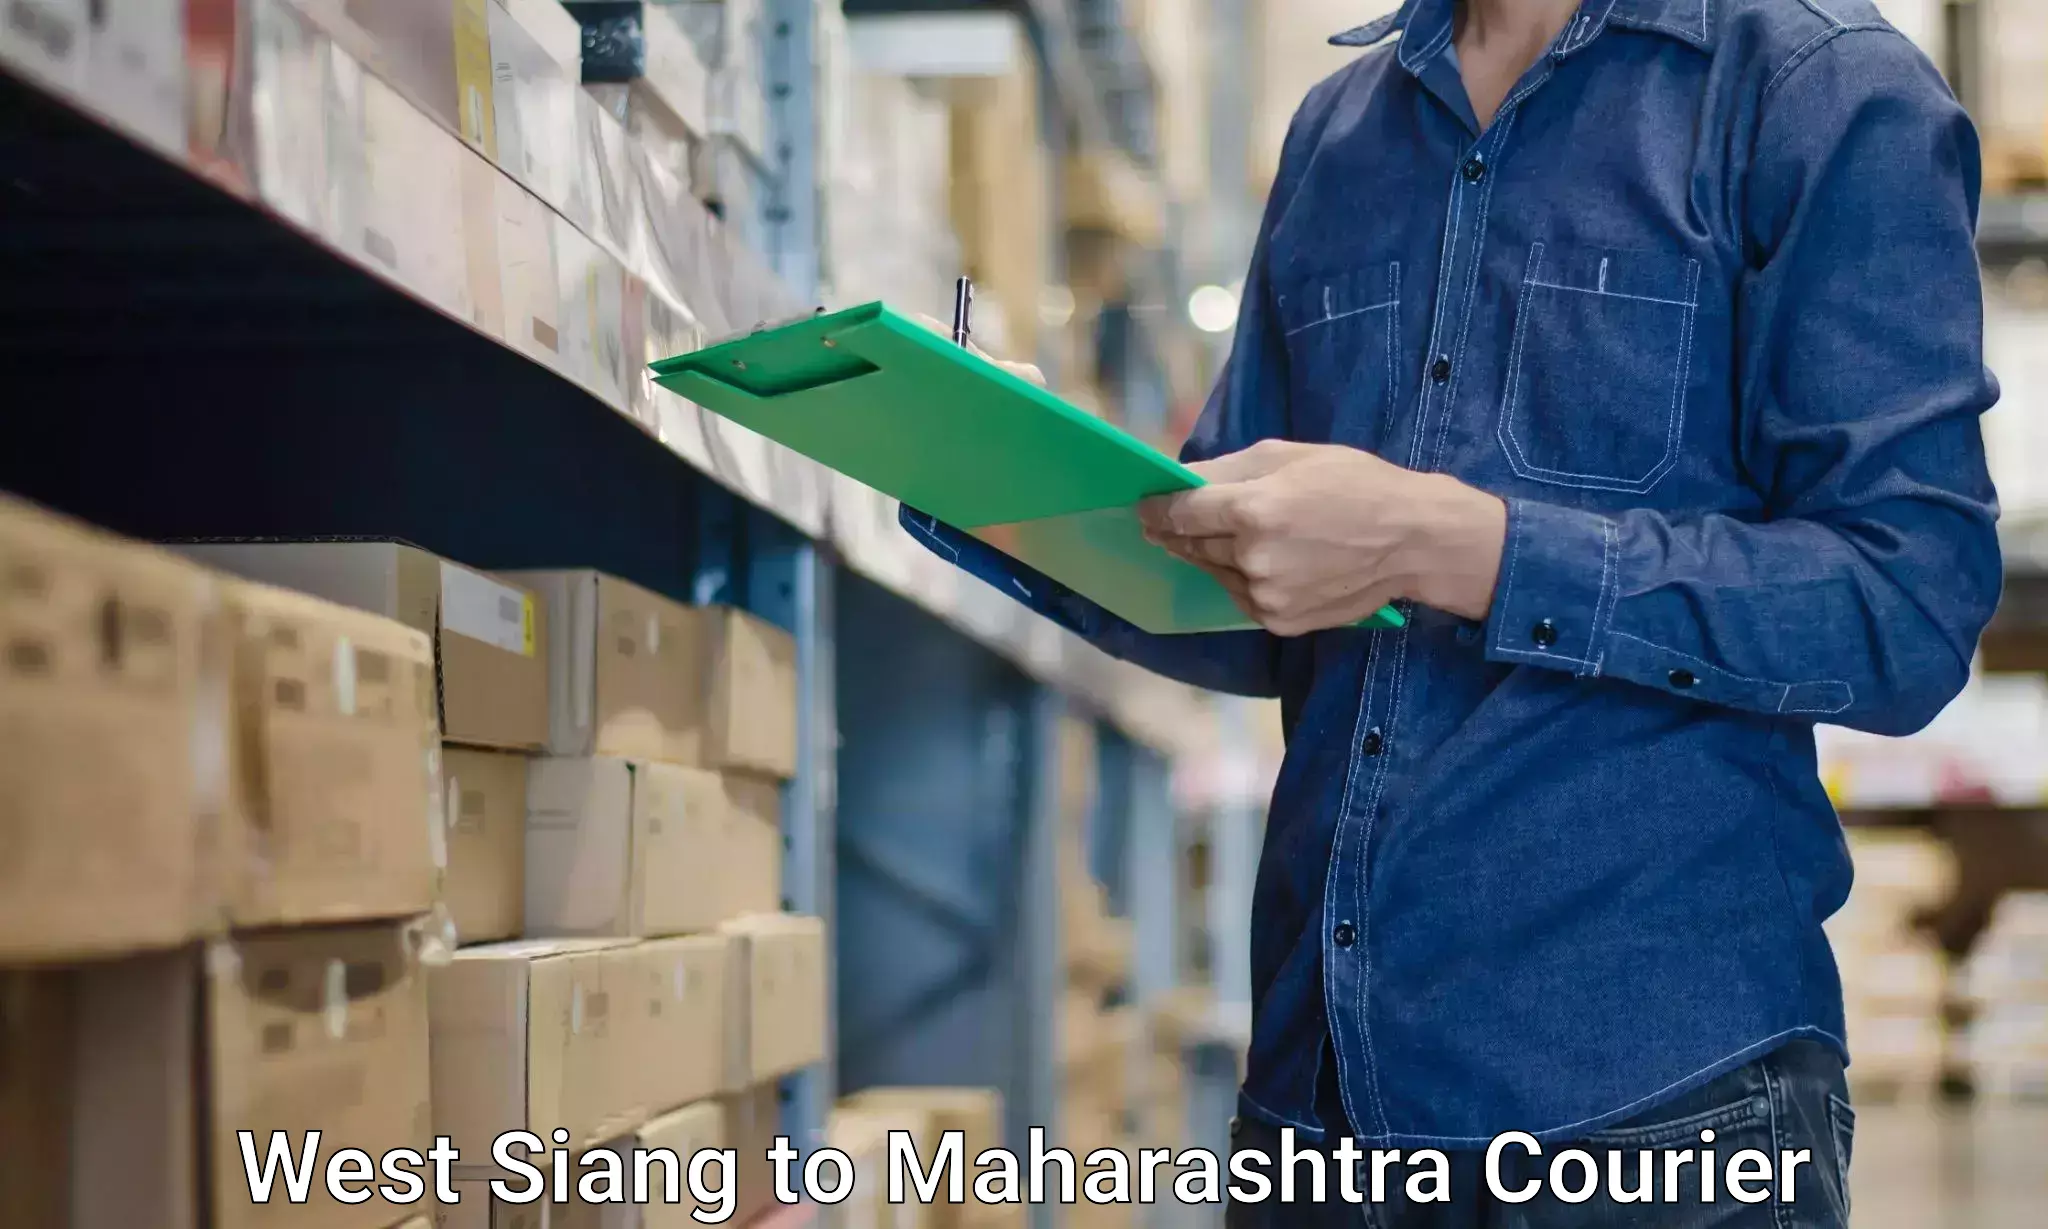 Home shifting experts West Siang to Maharashtra